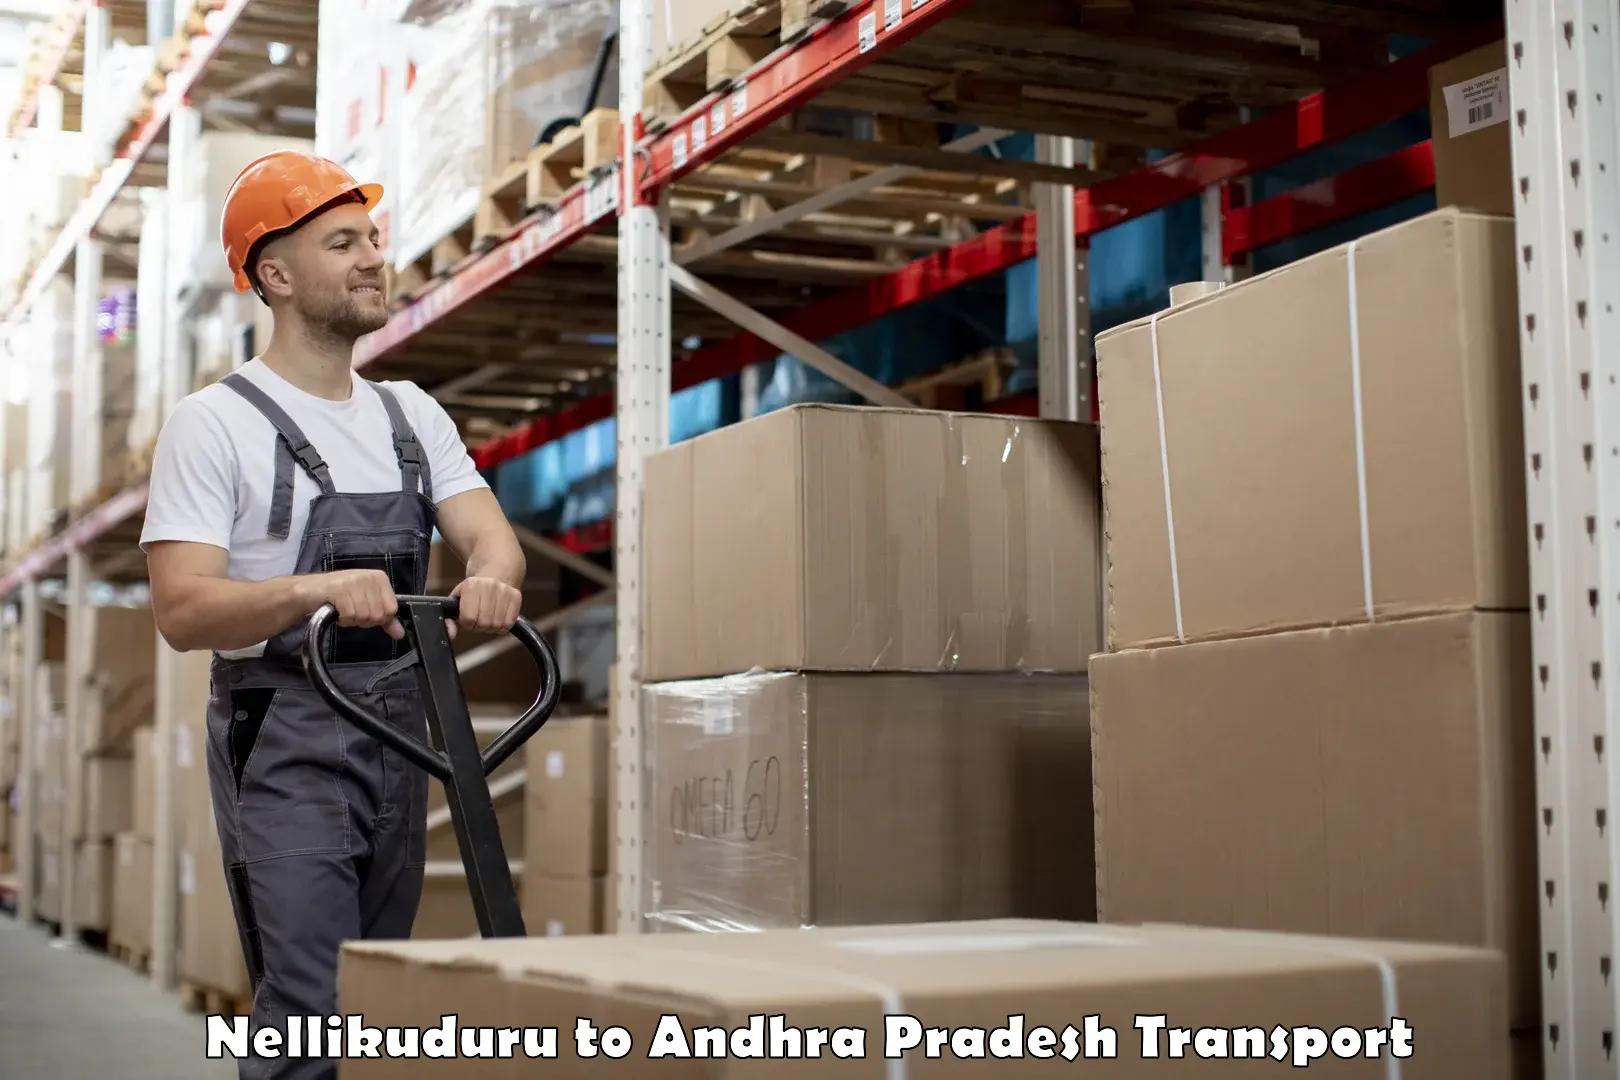 Nearest transport service Nellikuduru to Tada Tirupati